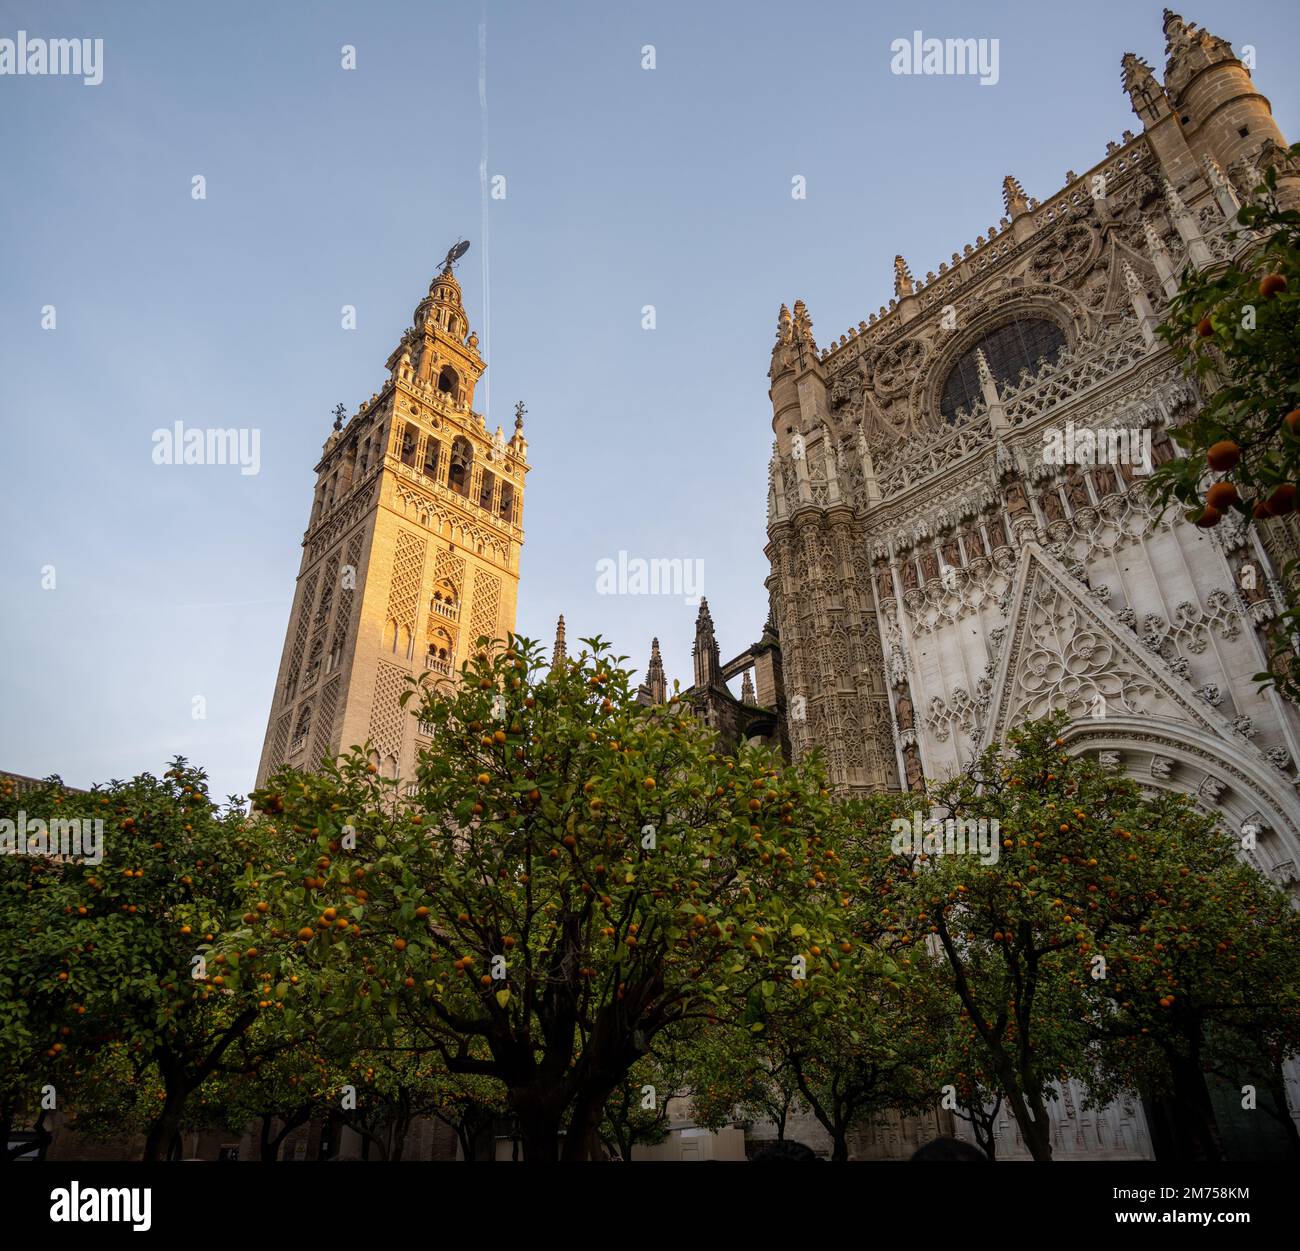 Giralda, der Glockenturm der Kathedrale von Sevilla in Sevilla, Spanien, wurde als Minarett für die große Moschee von Sevilla in al-Andalus erbaut. Stockfoto